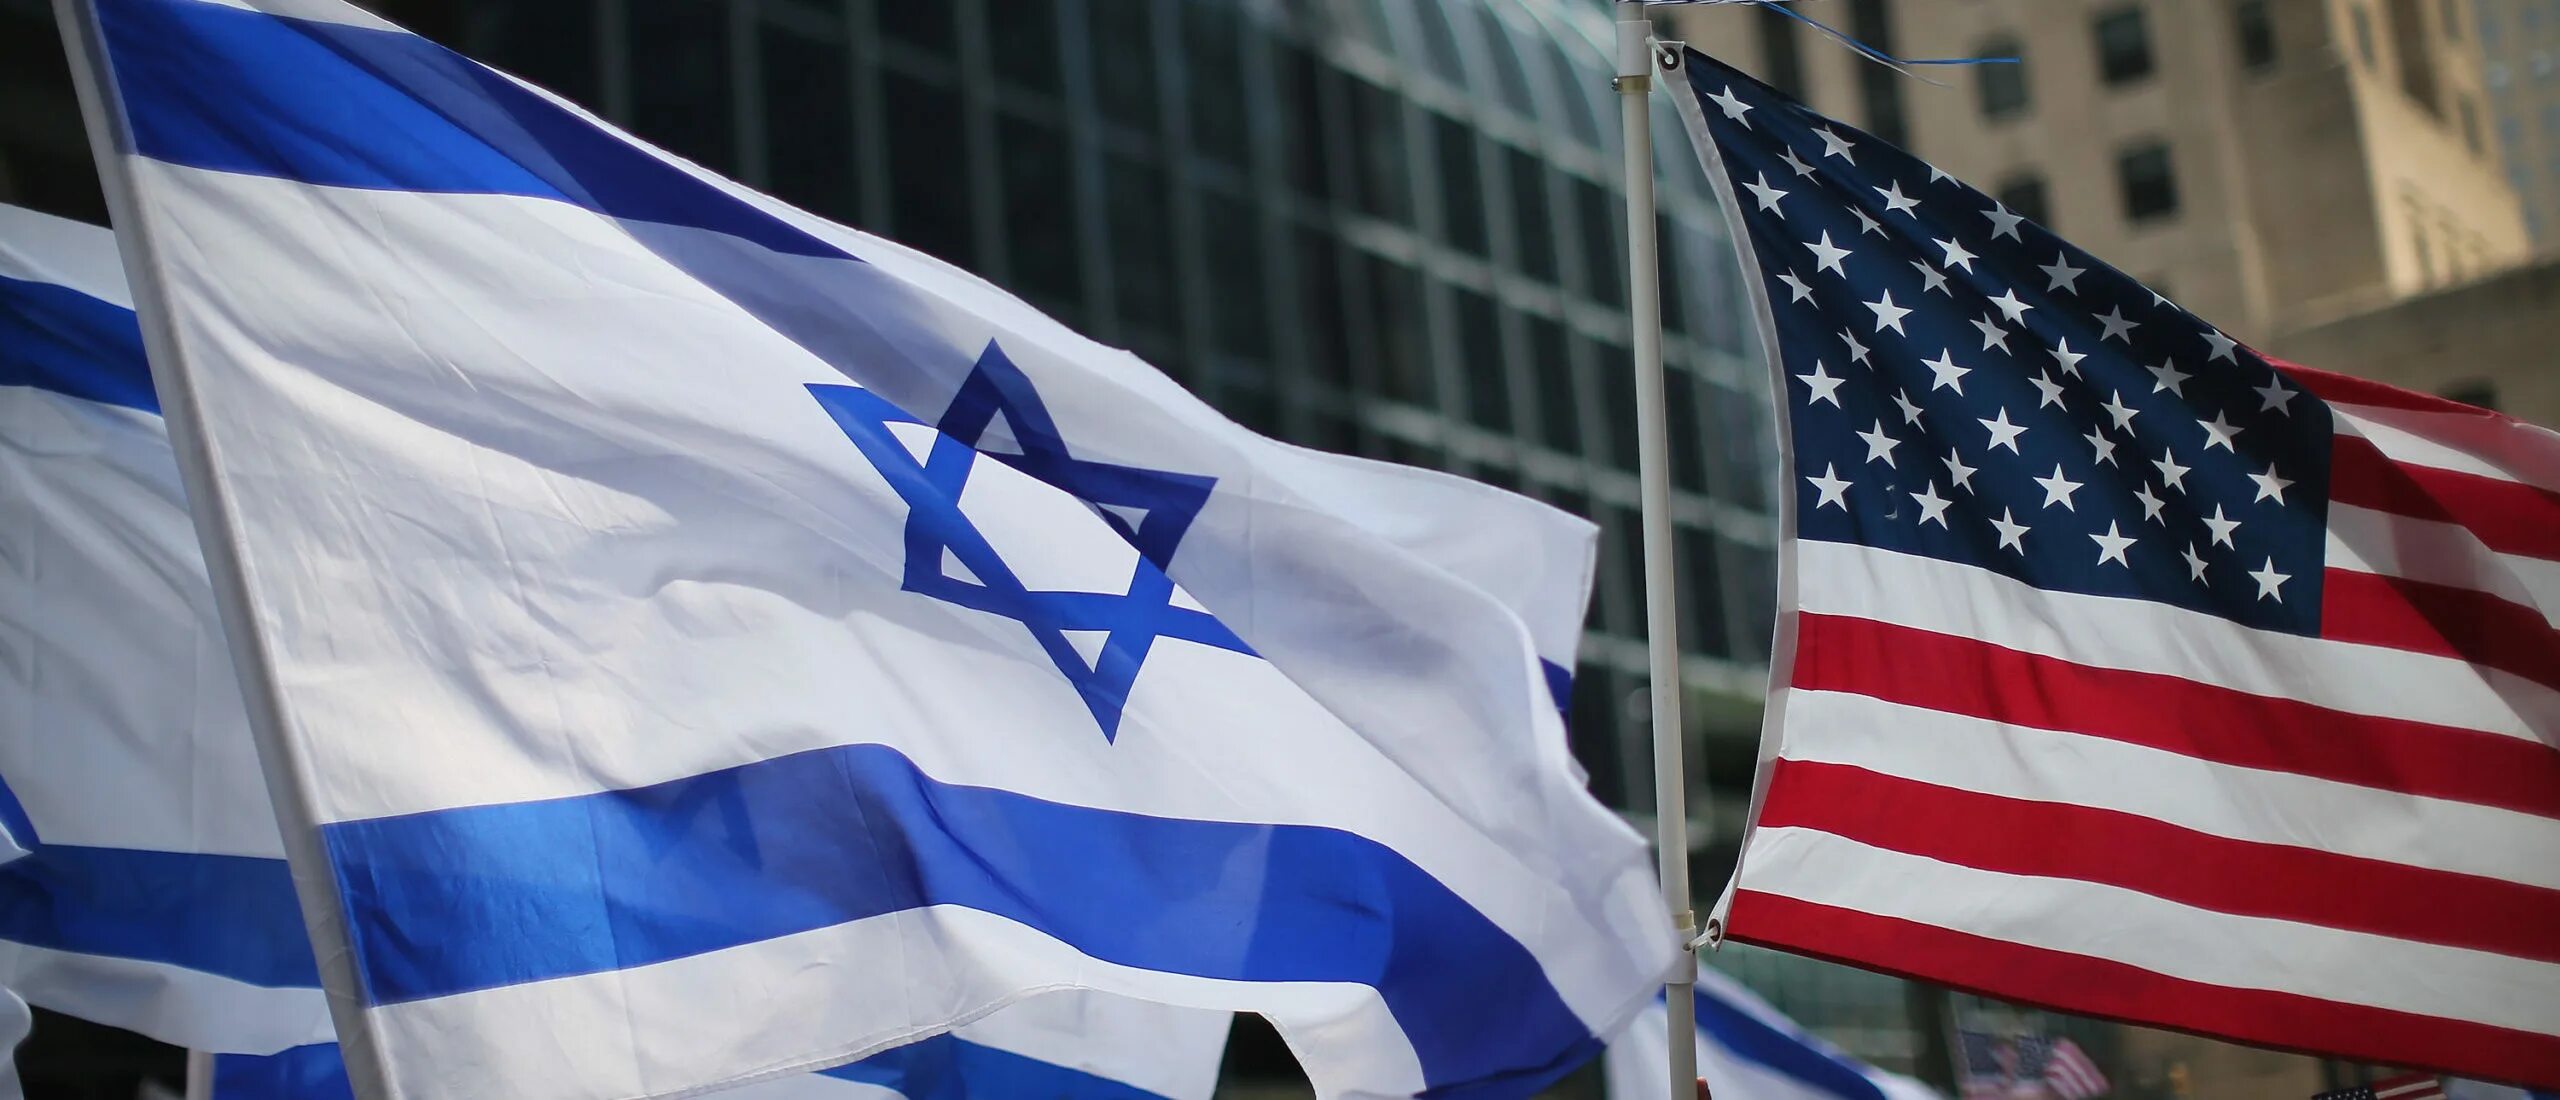 Должностное лицо в сша. Флаг США И Израиля. Поддержка Израиля США. Американская финансовая помощь Израилю.